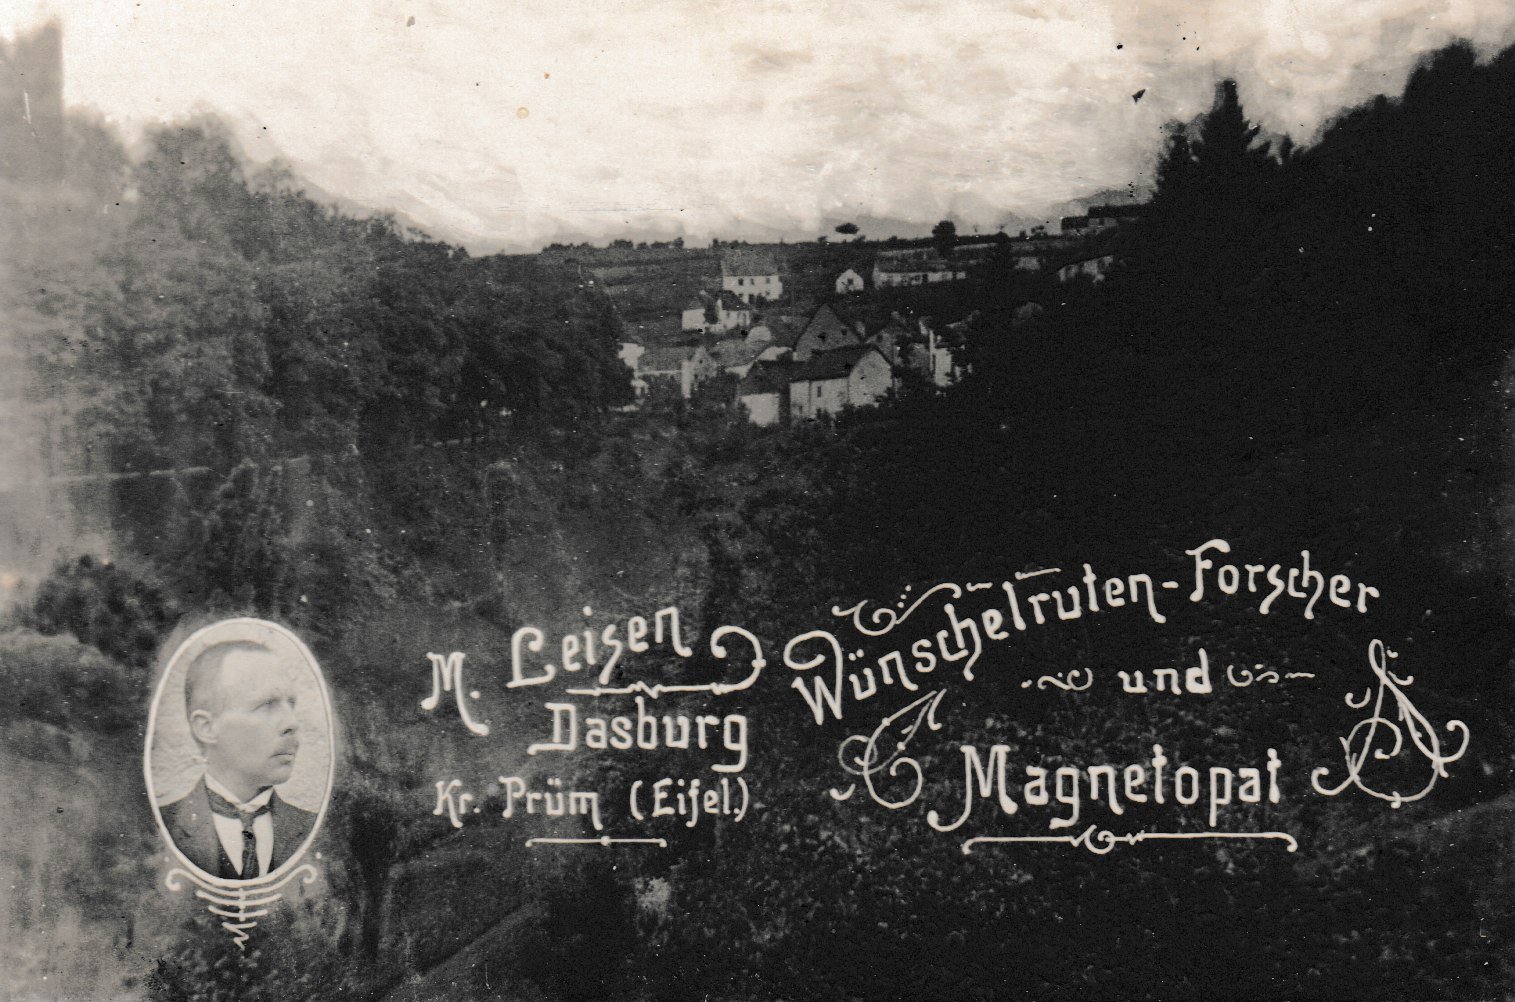 Werbeplakat von Matthias Leisen als Wünschelruten-Forscher und Magnetopat (Dr. Jürgen Haffke CC BY-NC-SA)